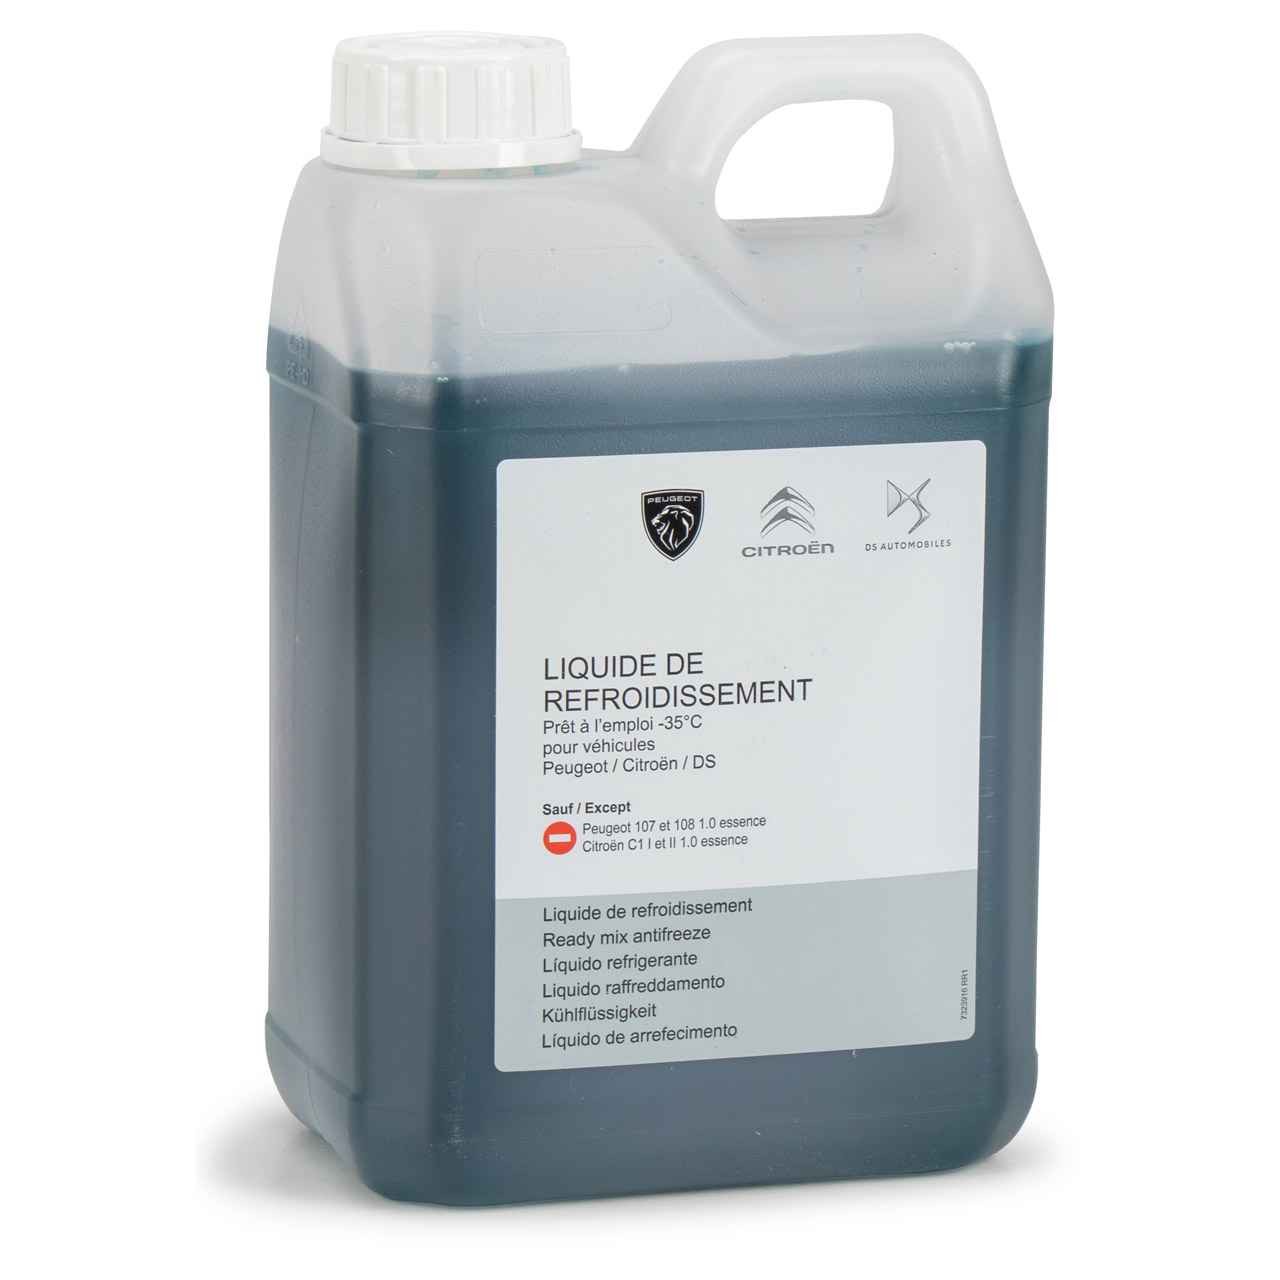 Frostschutzmittel für Kühler - 1 Liter - Art. Nr. R331174